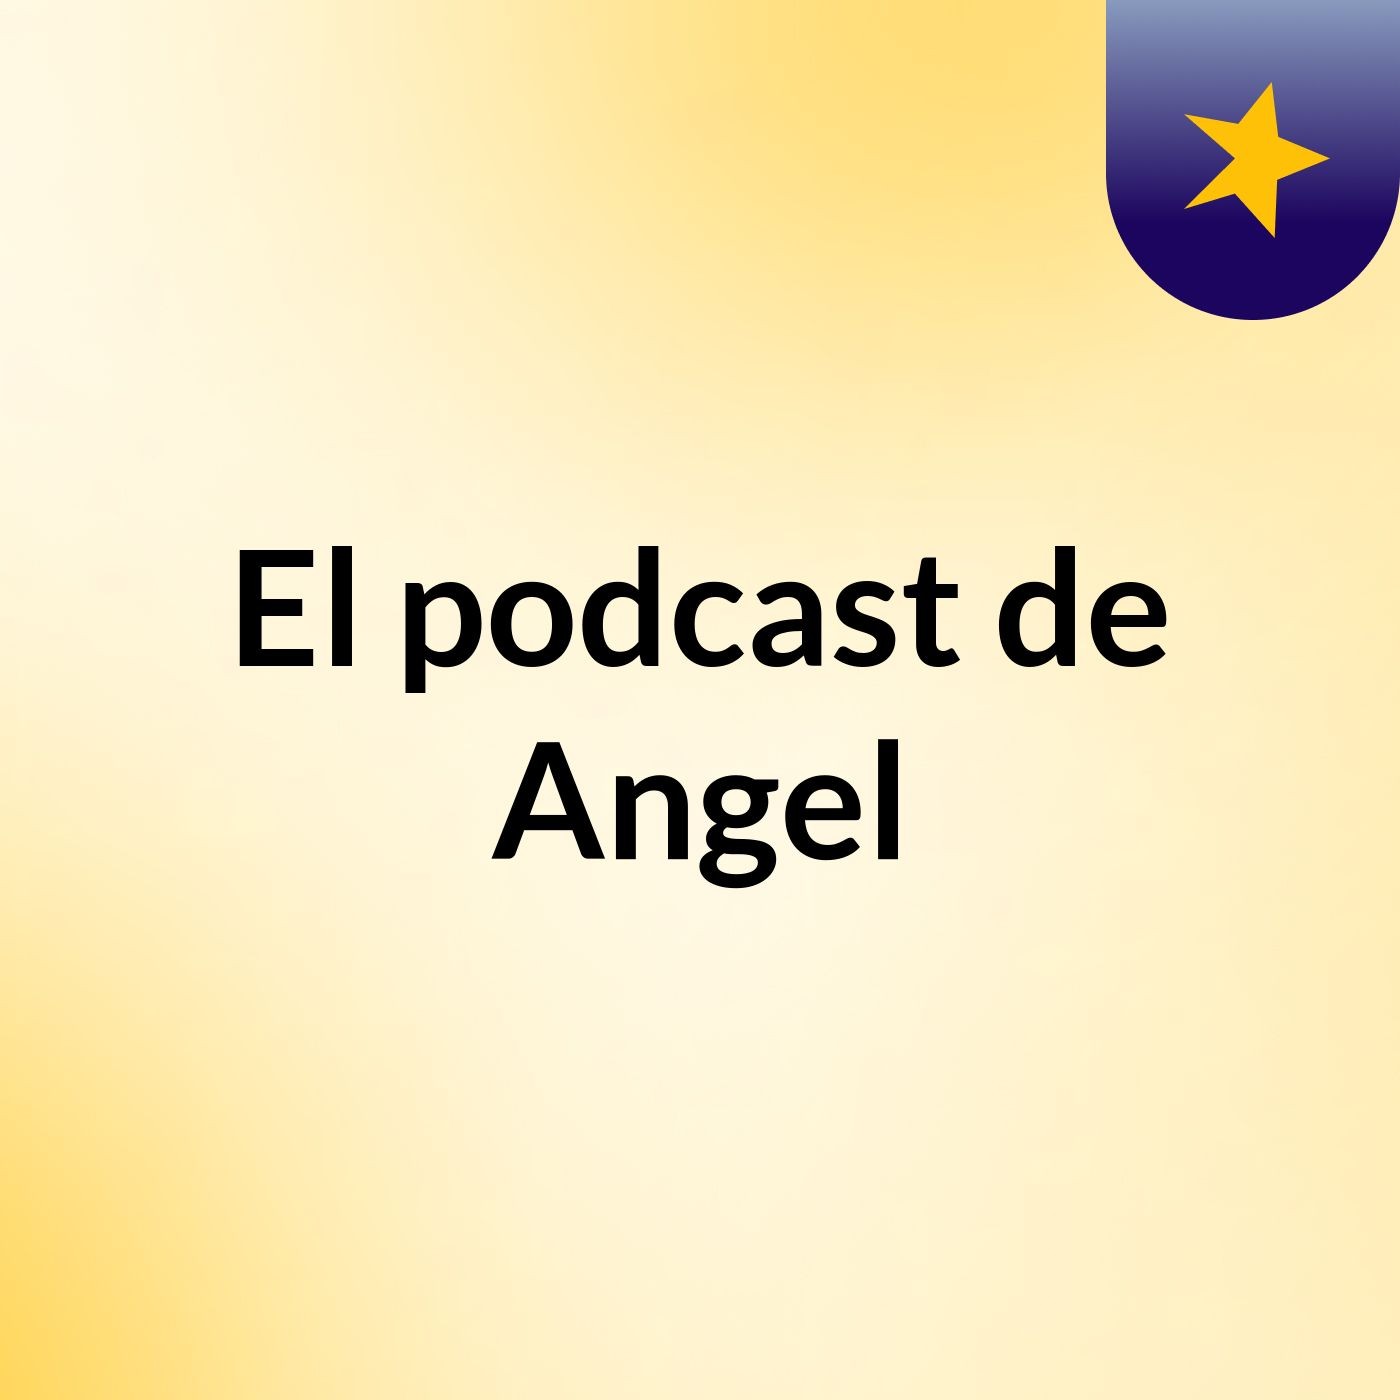 El podcast de Angel